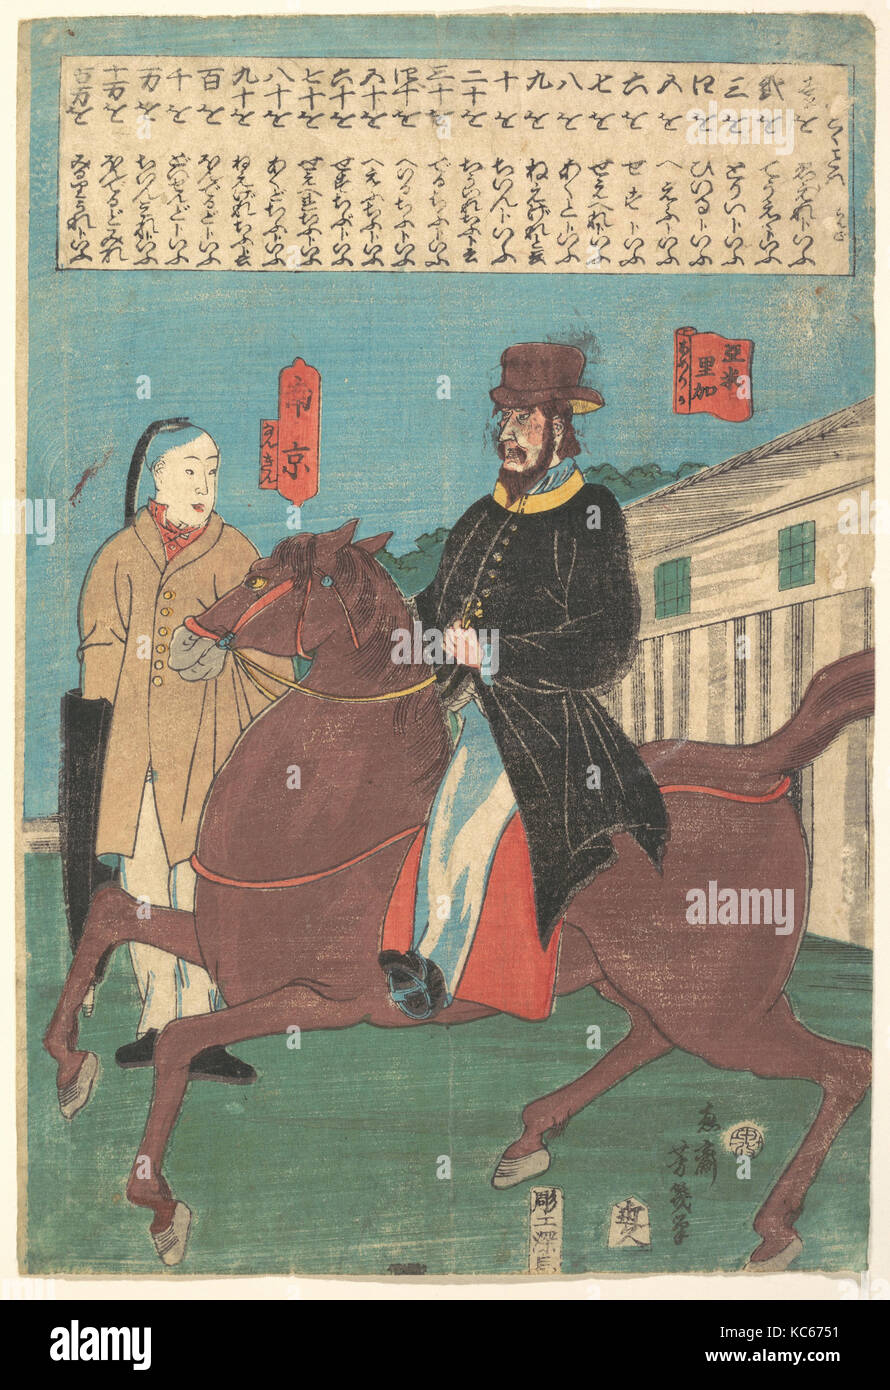 亜米利加・南京, An American on Horseback and a Chinese with a Furled Umbrella, Utagawa Yoshiiku, 12th month, 1860 Stock Photo